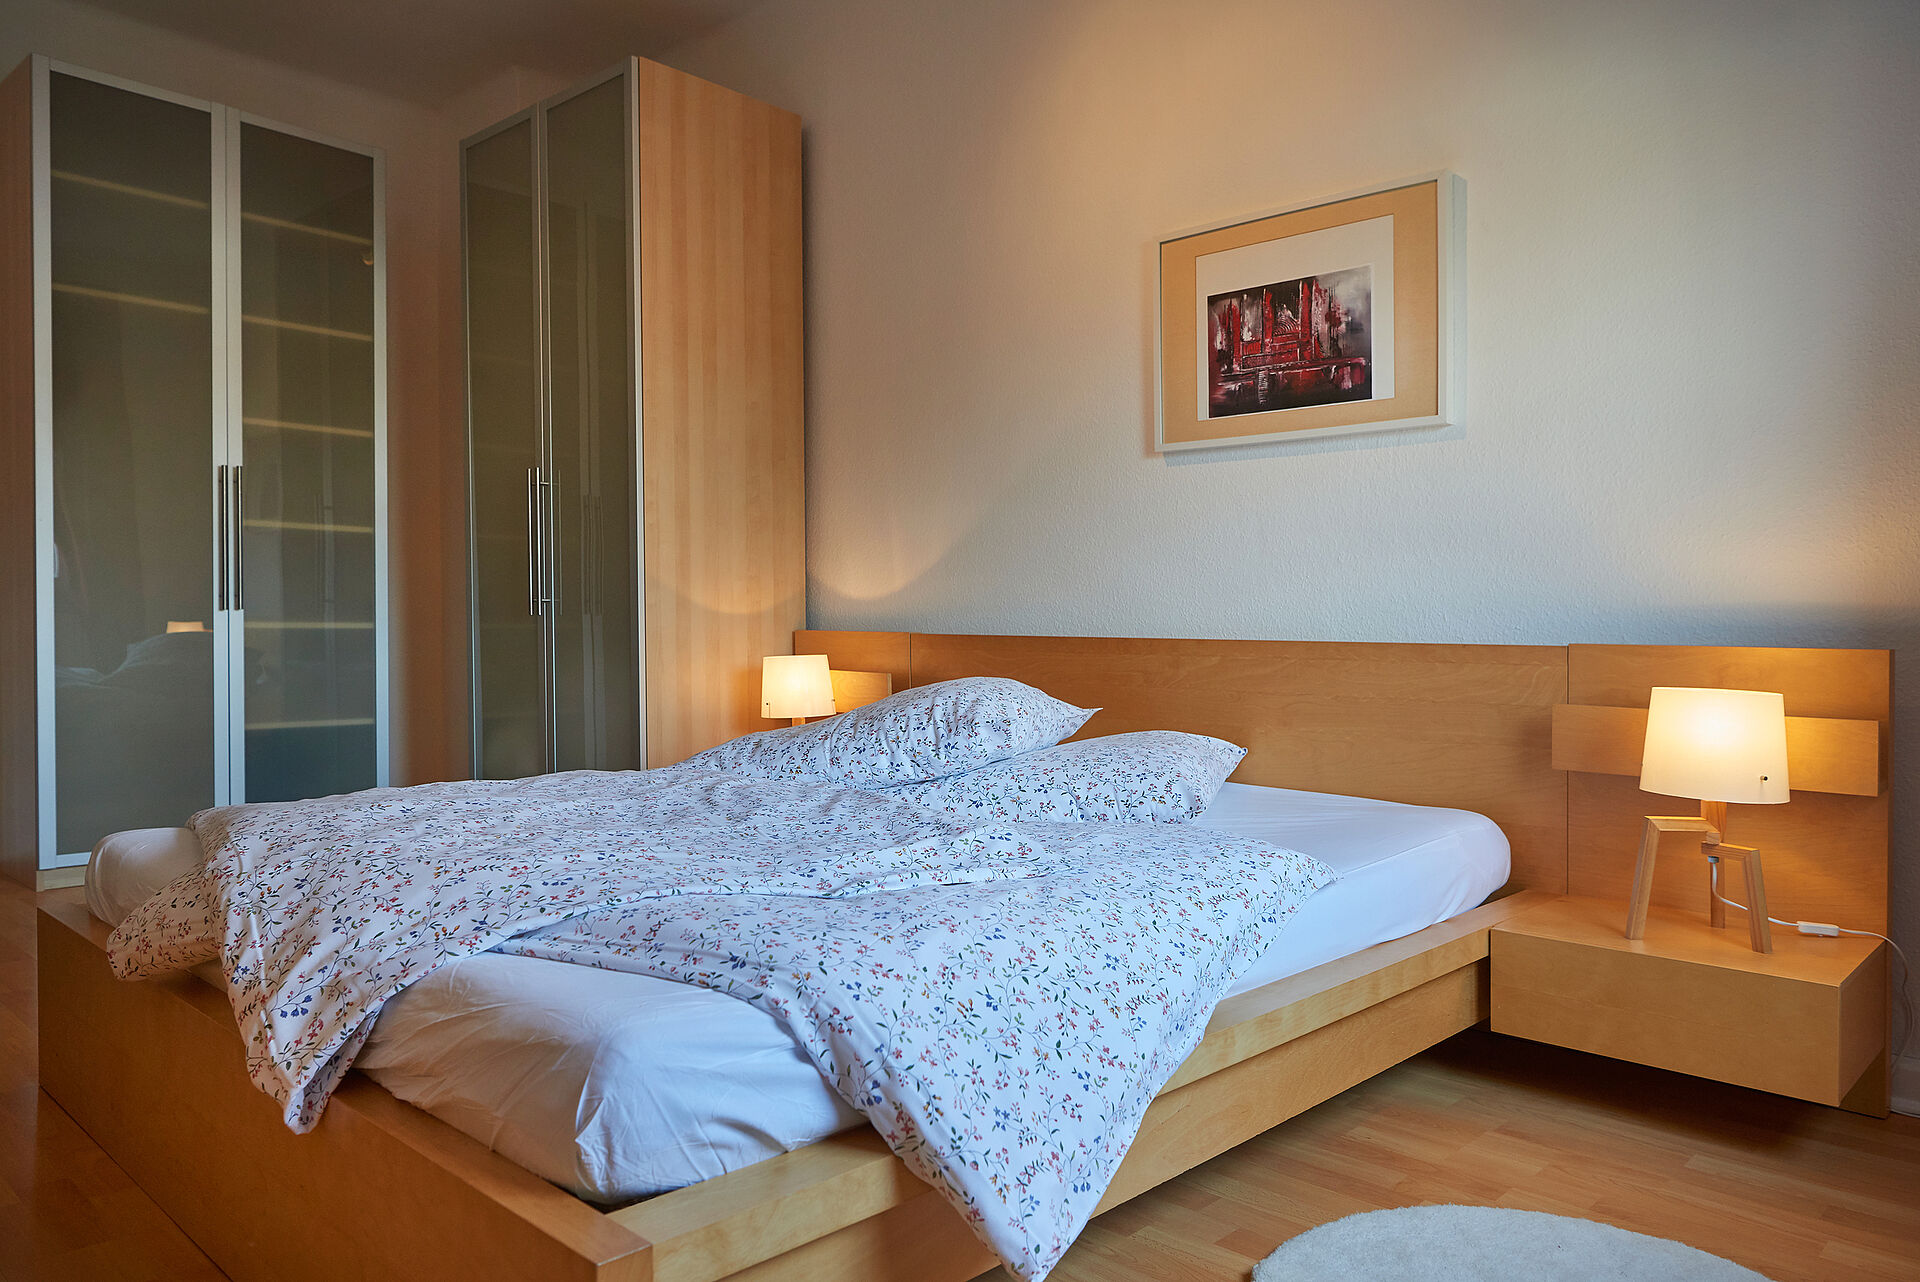 Schlafzimmer mit einem Doppelbett aus Holz, auf dem Nachttisch leuchten elegante Lampen